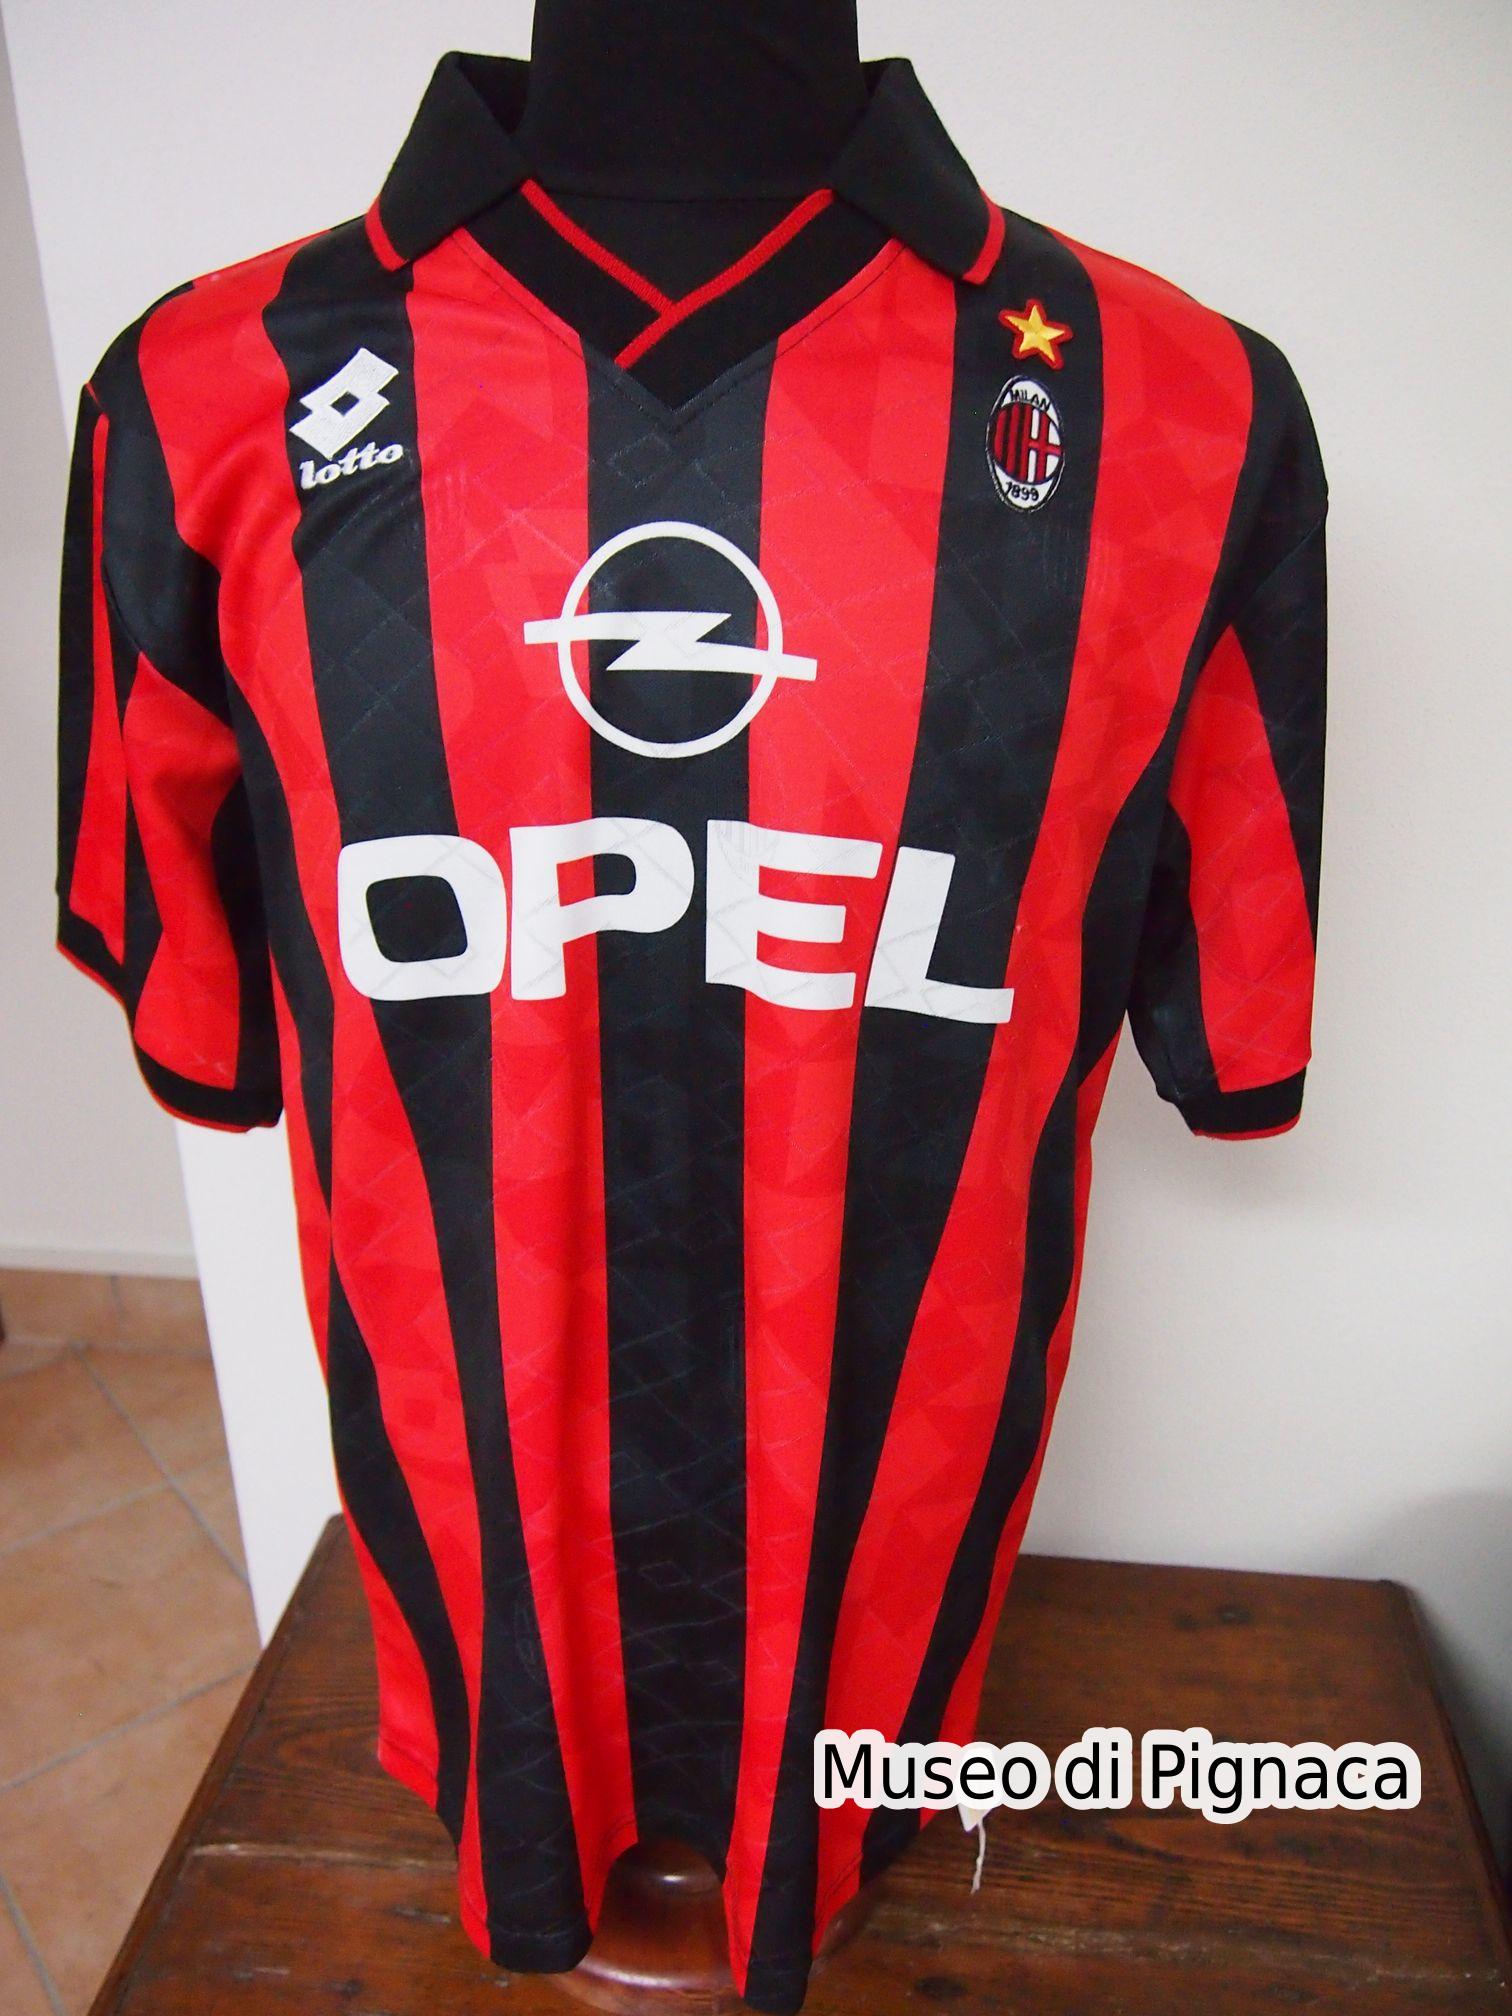 Roberto Baggio - Maglia Milan 1995-96 (Fronte)